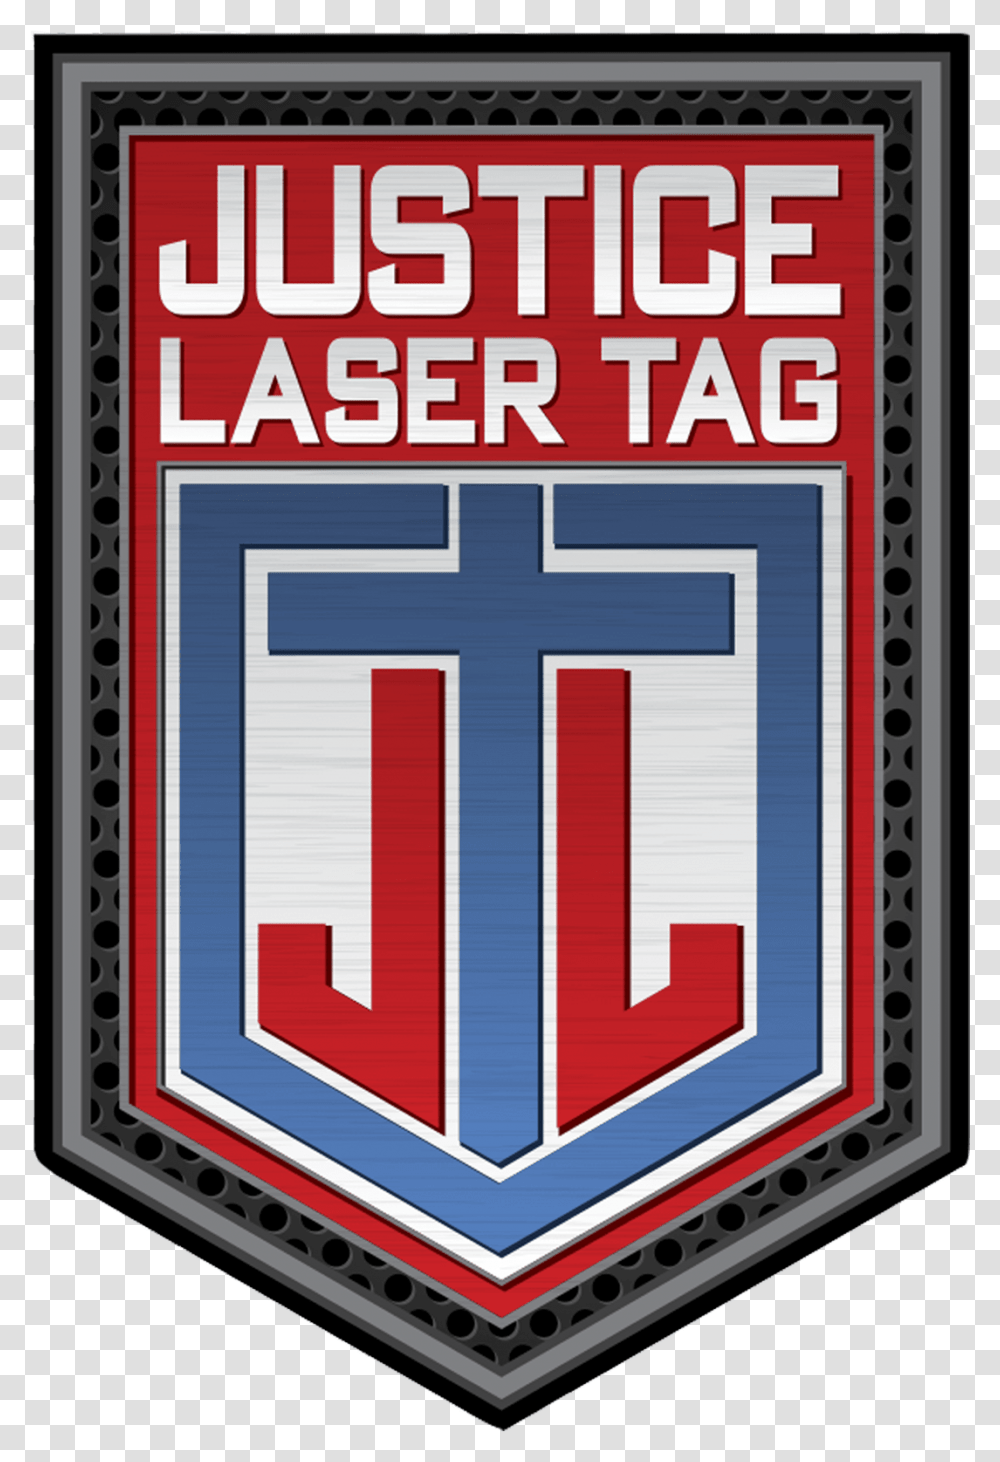 Laser Tag Emblem, Logo, Trademark Transparent Png